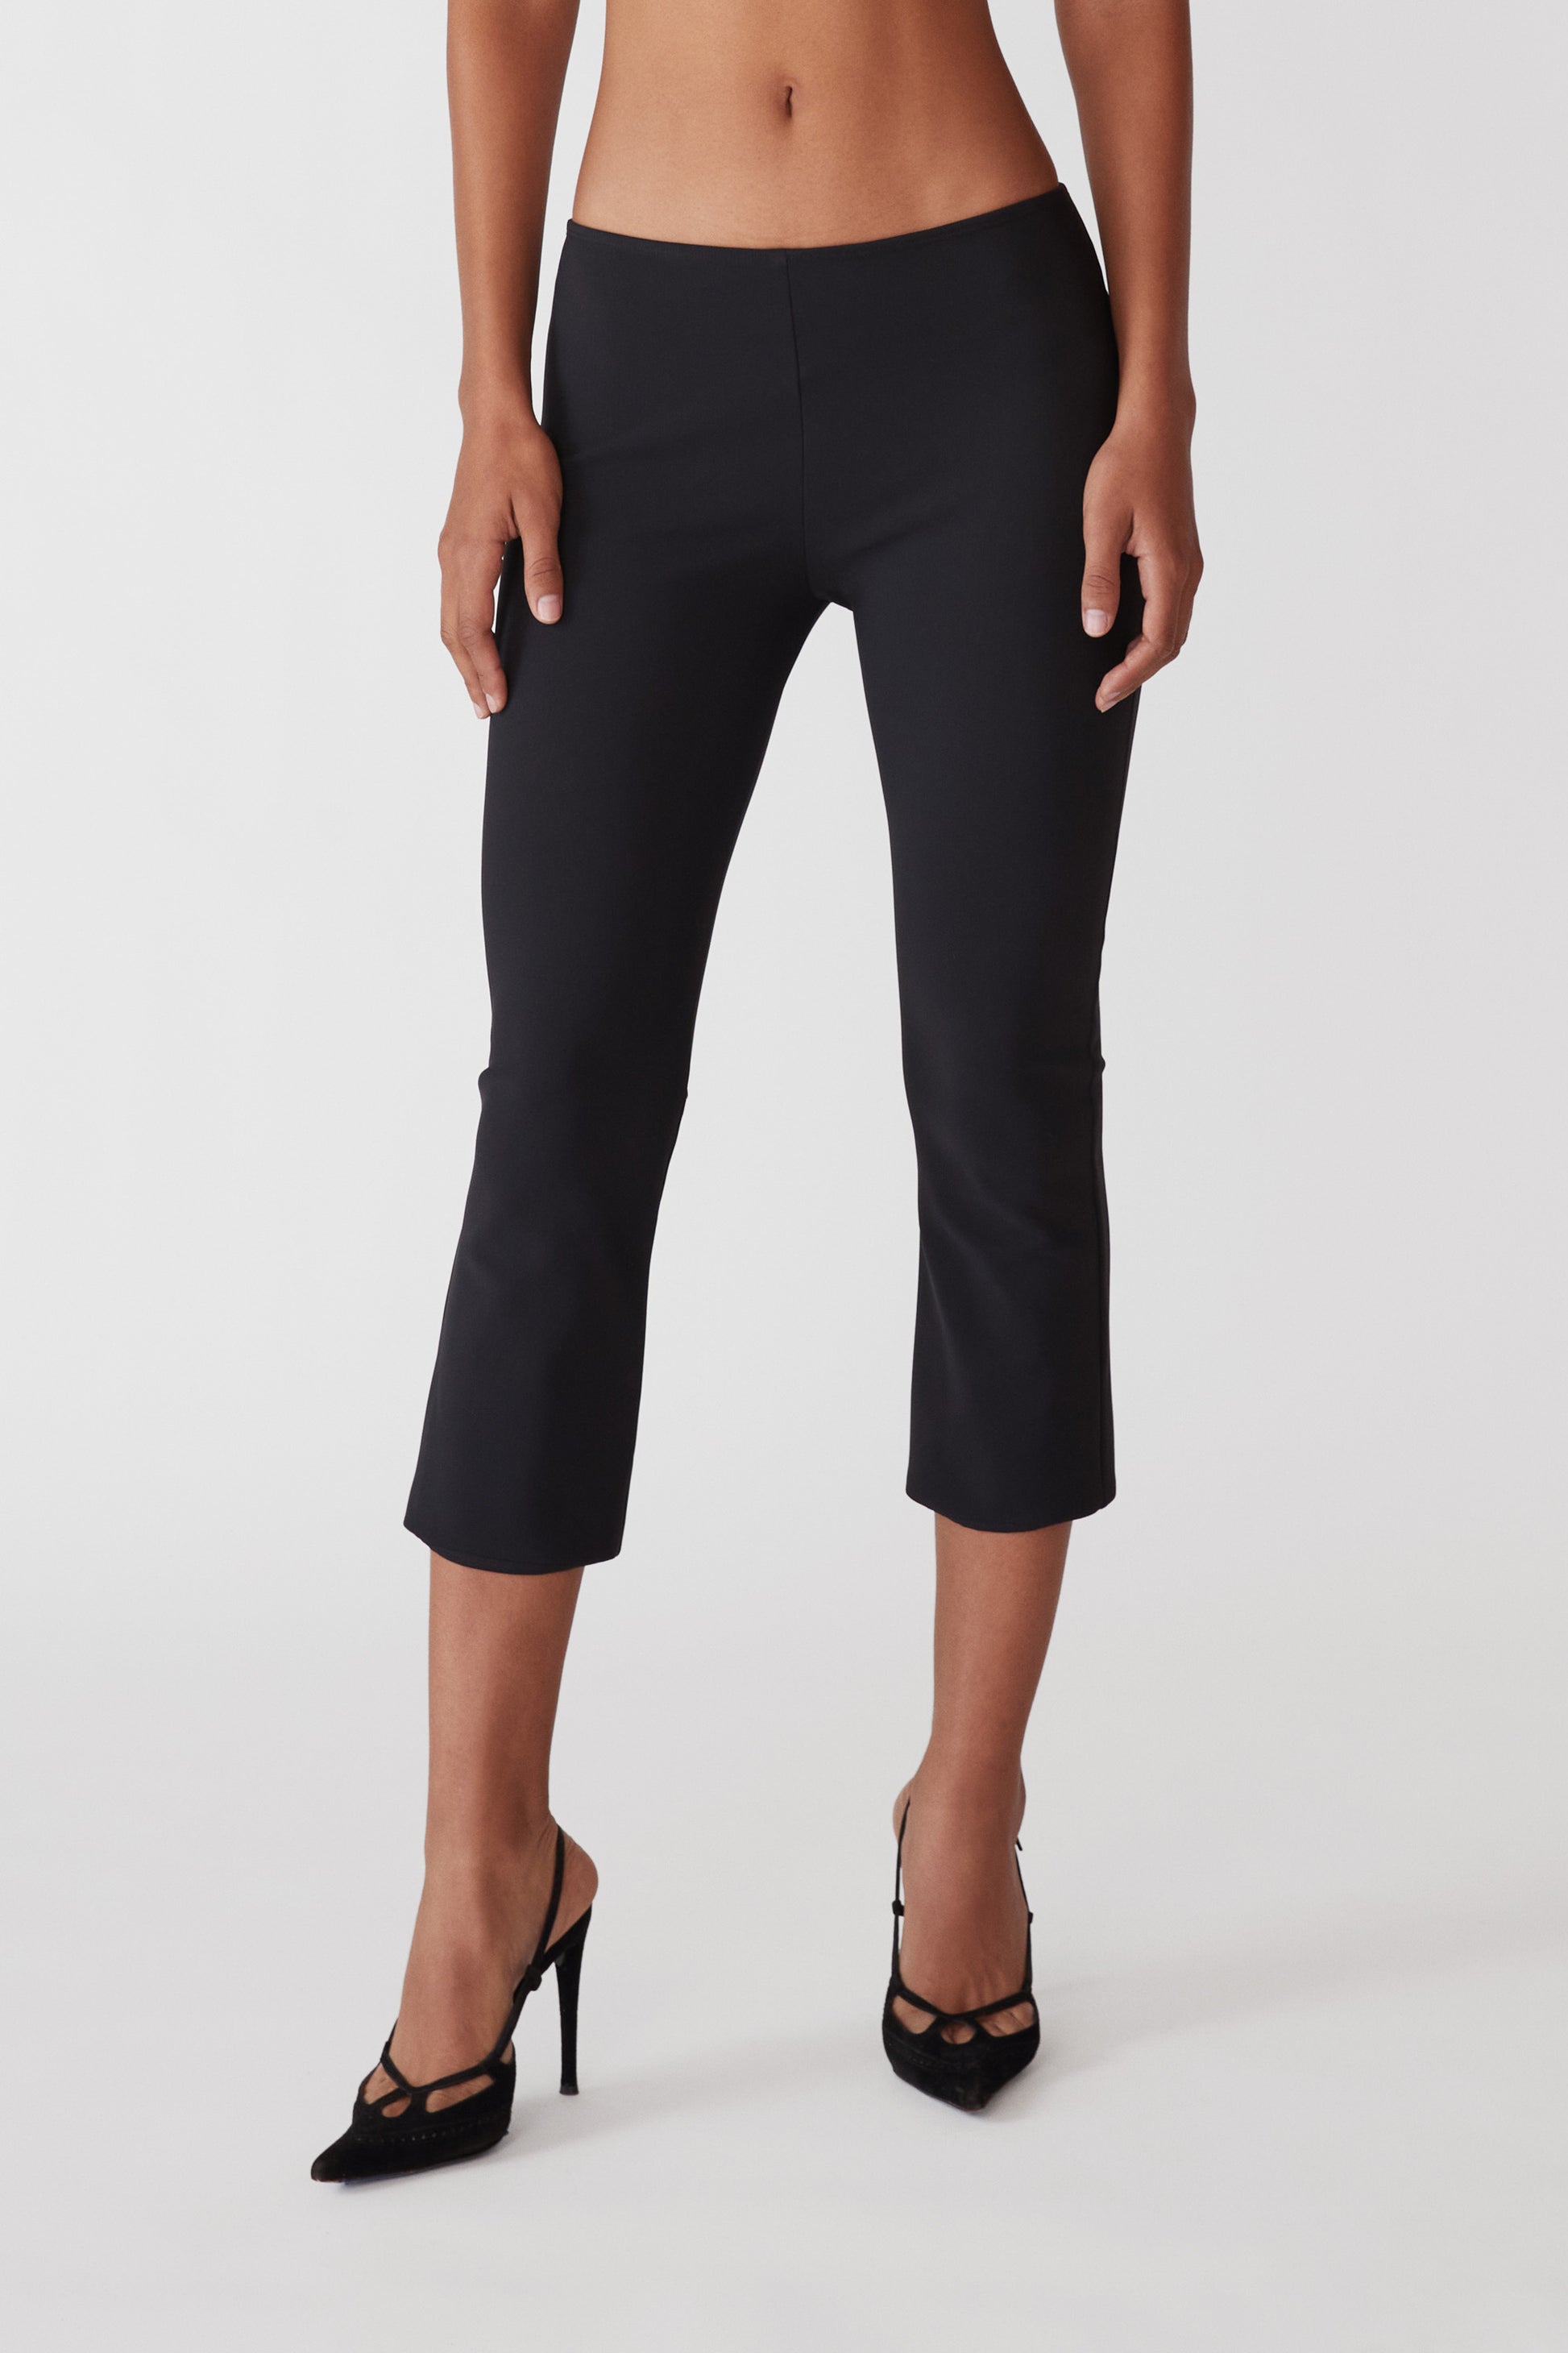 Sandpiper, Pants & Jumpsuits, Sandpiper Womens Black Capri Pants Size 22